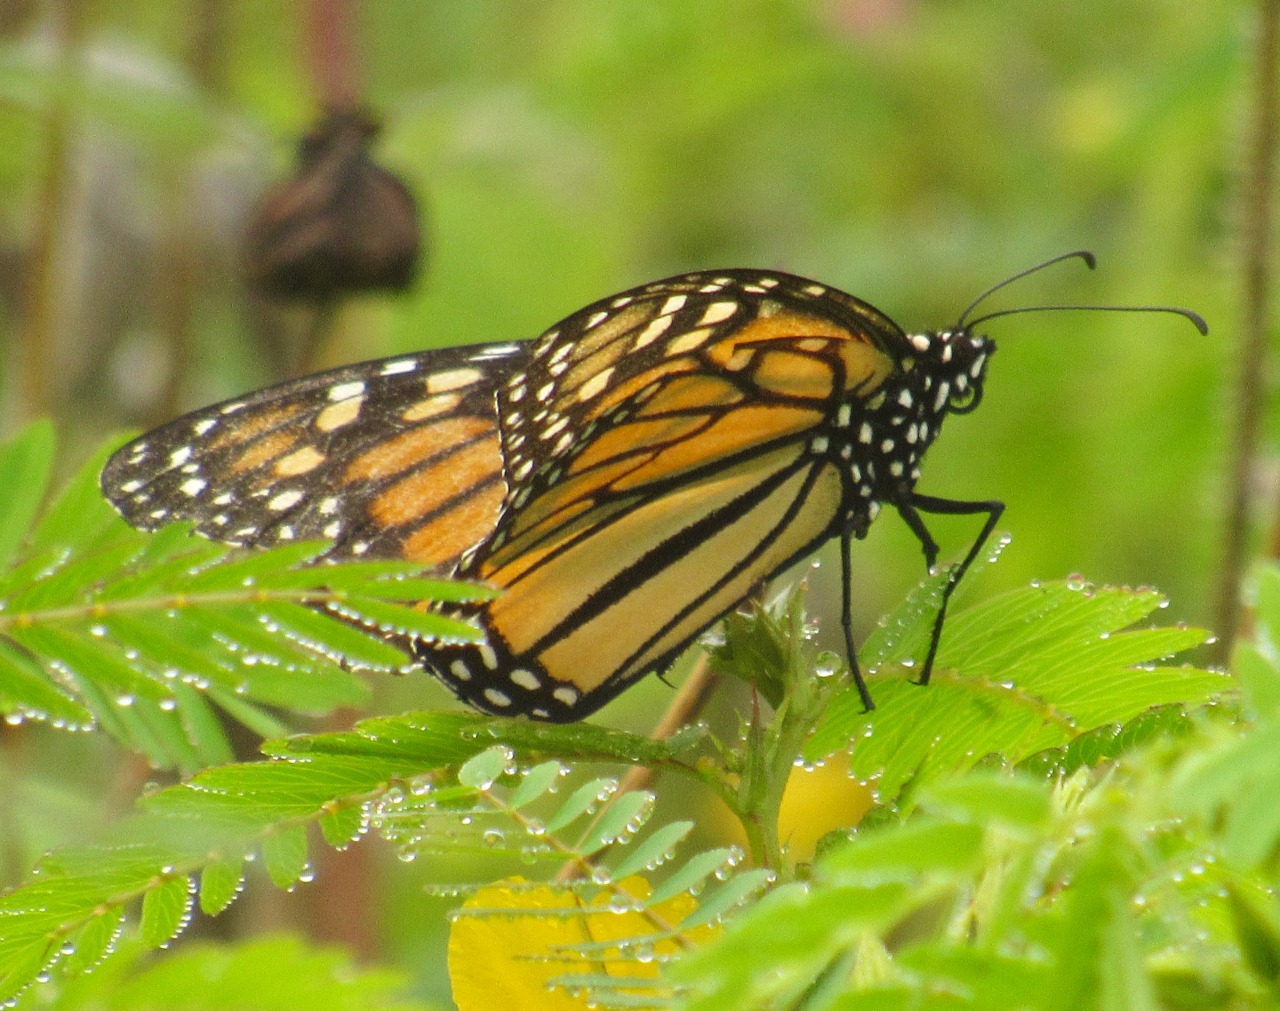 geopsych: “Monarch butterfly. ”